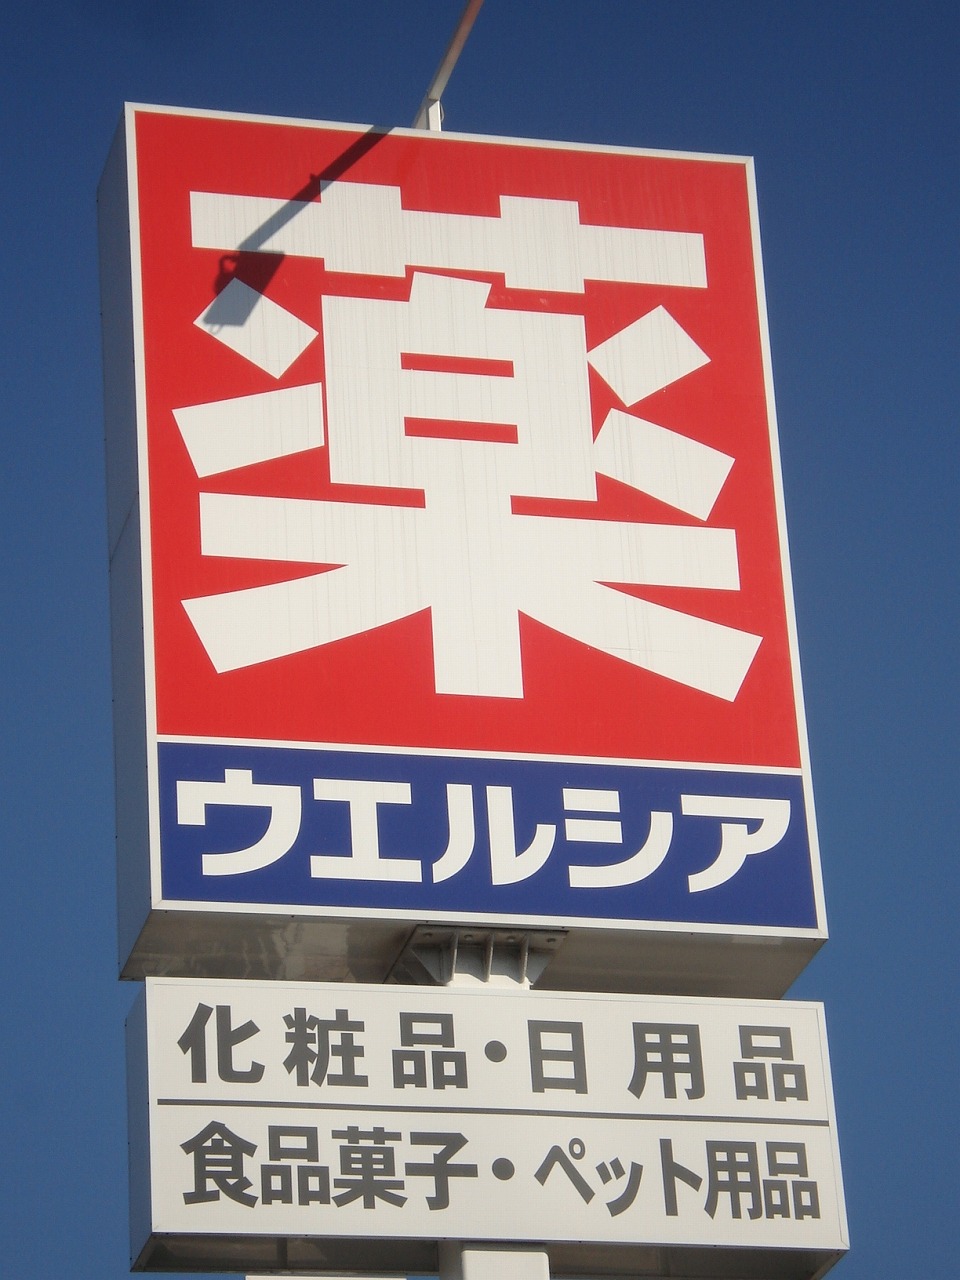 Dorakkusutoa. Uerushia Chiba Sakuragi shop 448m until (drugstore)